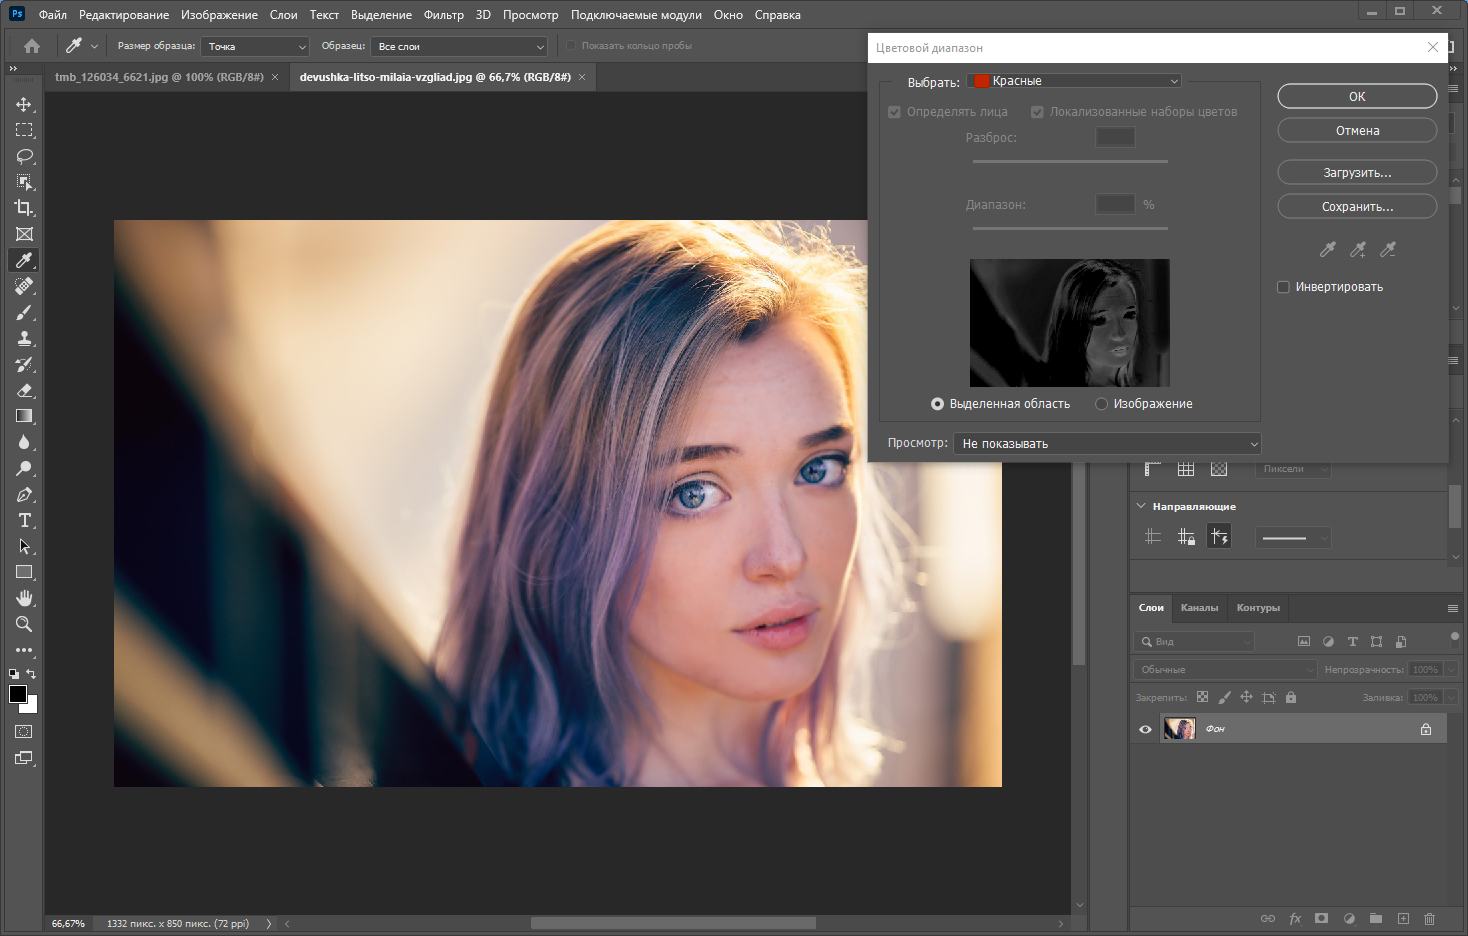 Adobe Photoshop 2022 23.2.2.325 RePack by KpoJIuK [Multi/Ru]